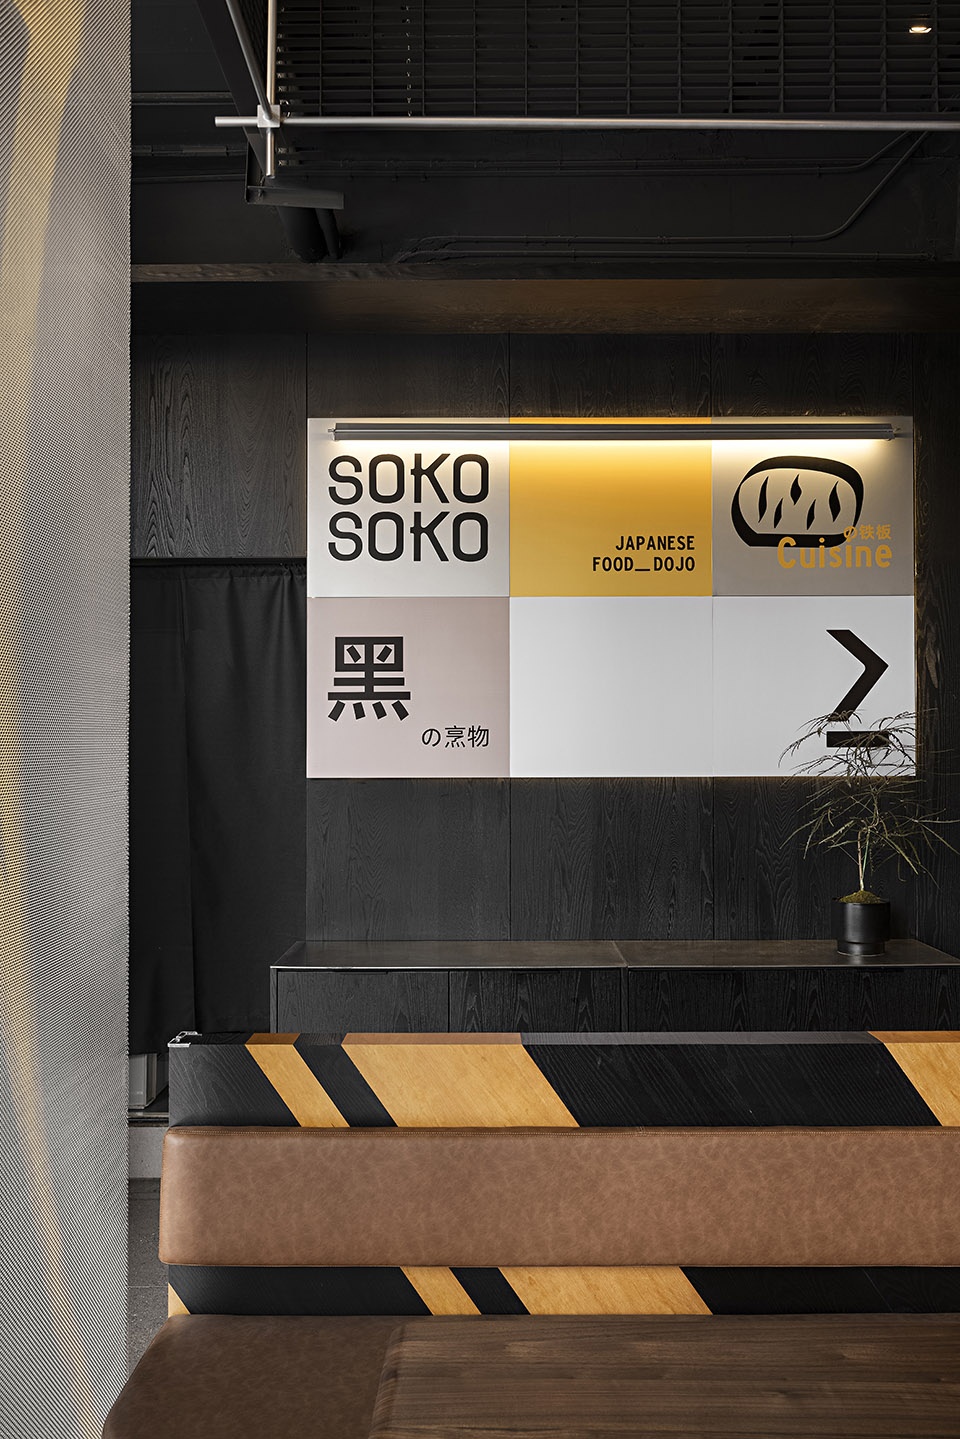 日本料理餐厅设计,餐厅设计,日料店设计,餐厅设计案例,餐厅设计方案,日式主题餐厅设计,寿司店设计,深圳,SOKO SOKO日料店,SORA索拉设计